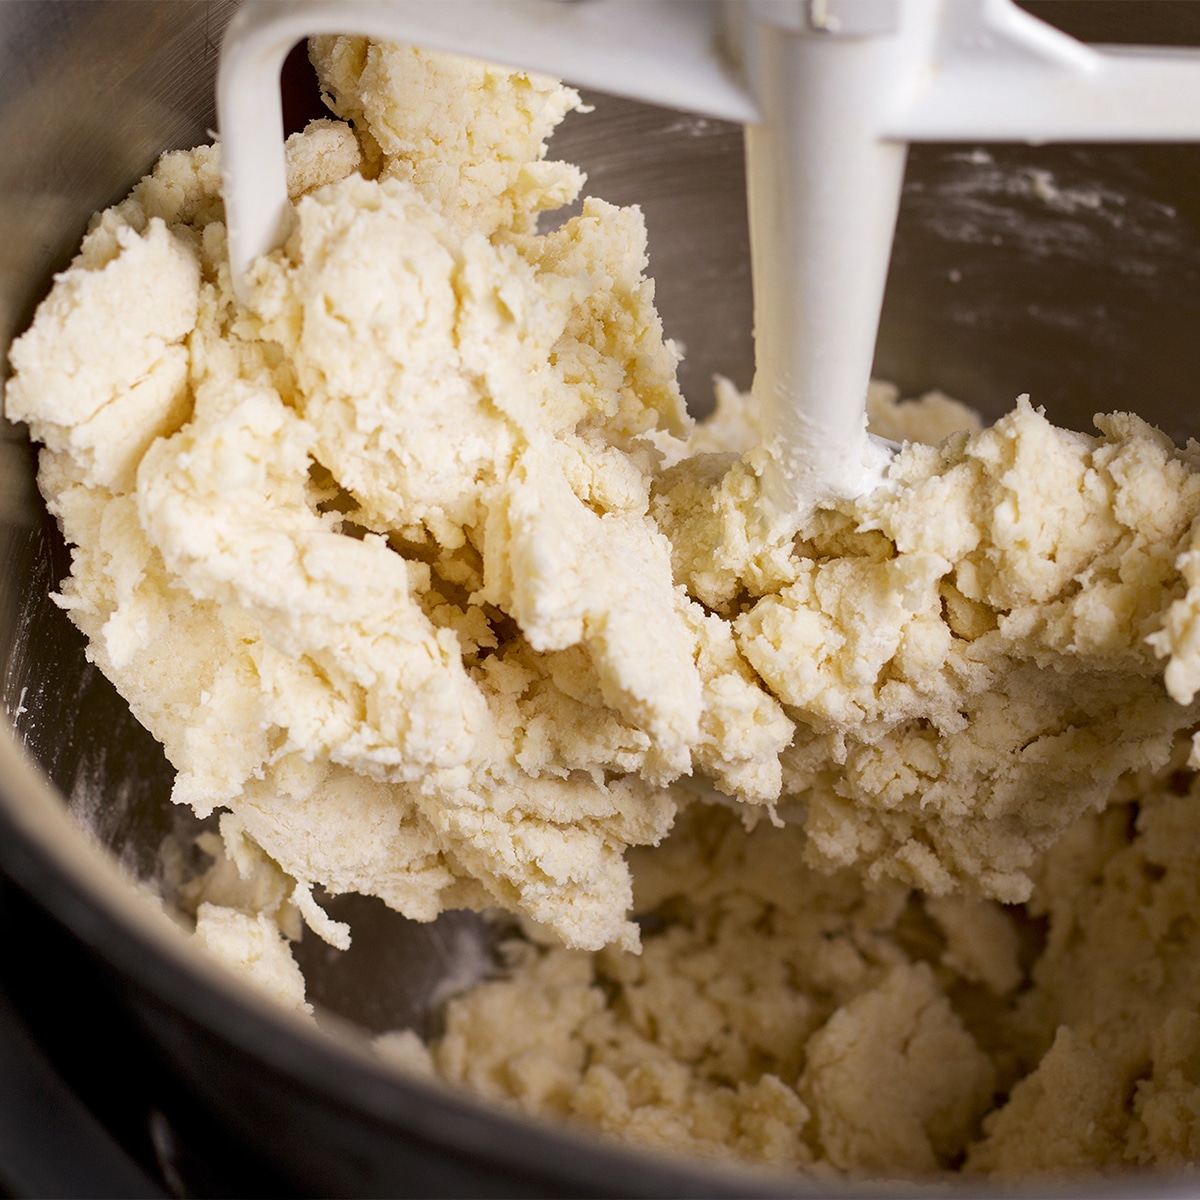 A mixing bowl containing tart crust dough.